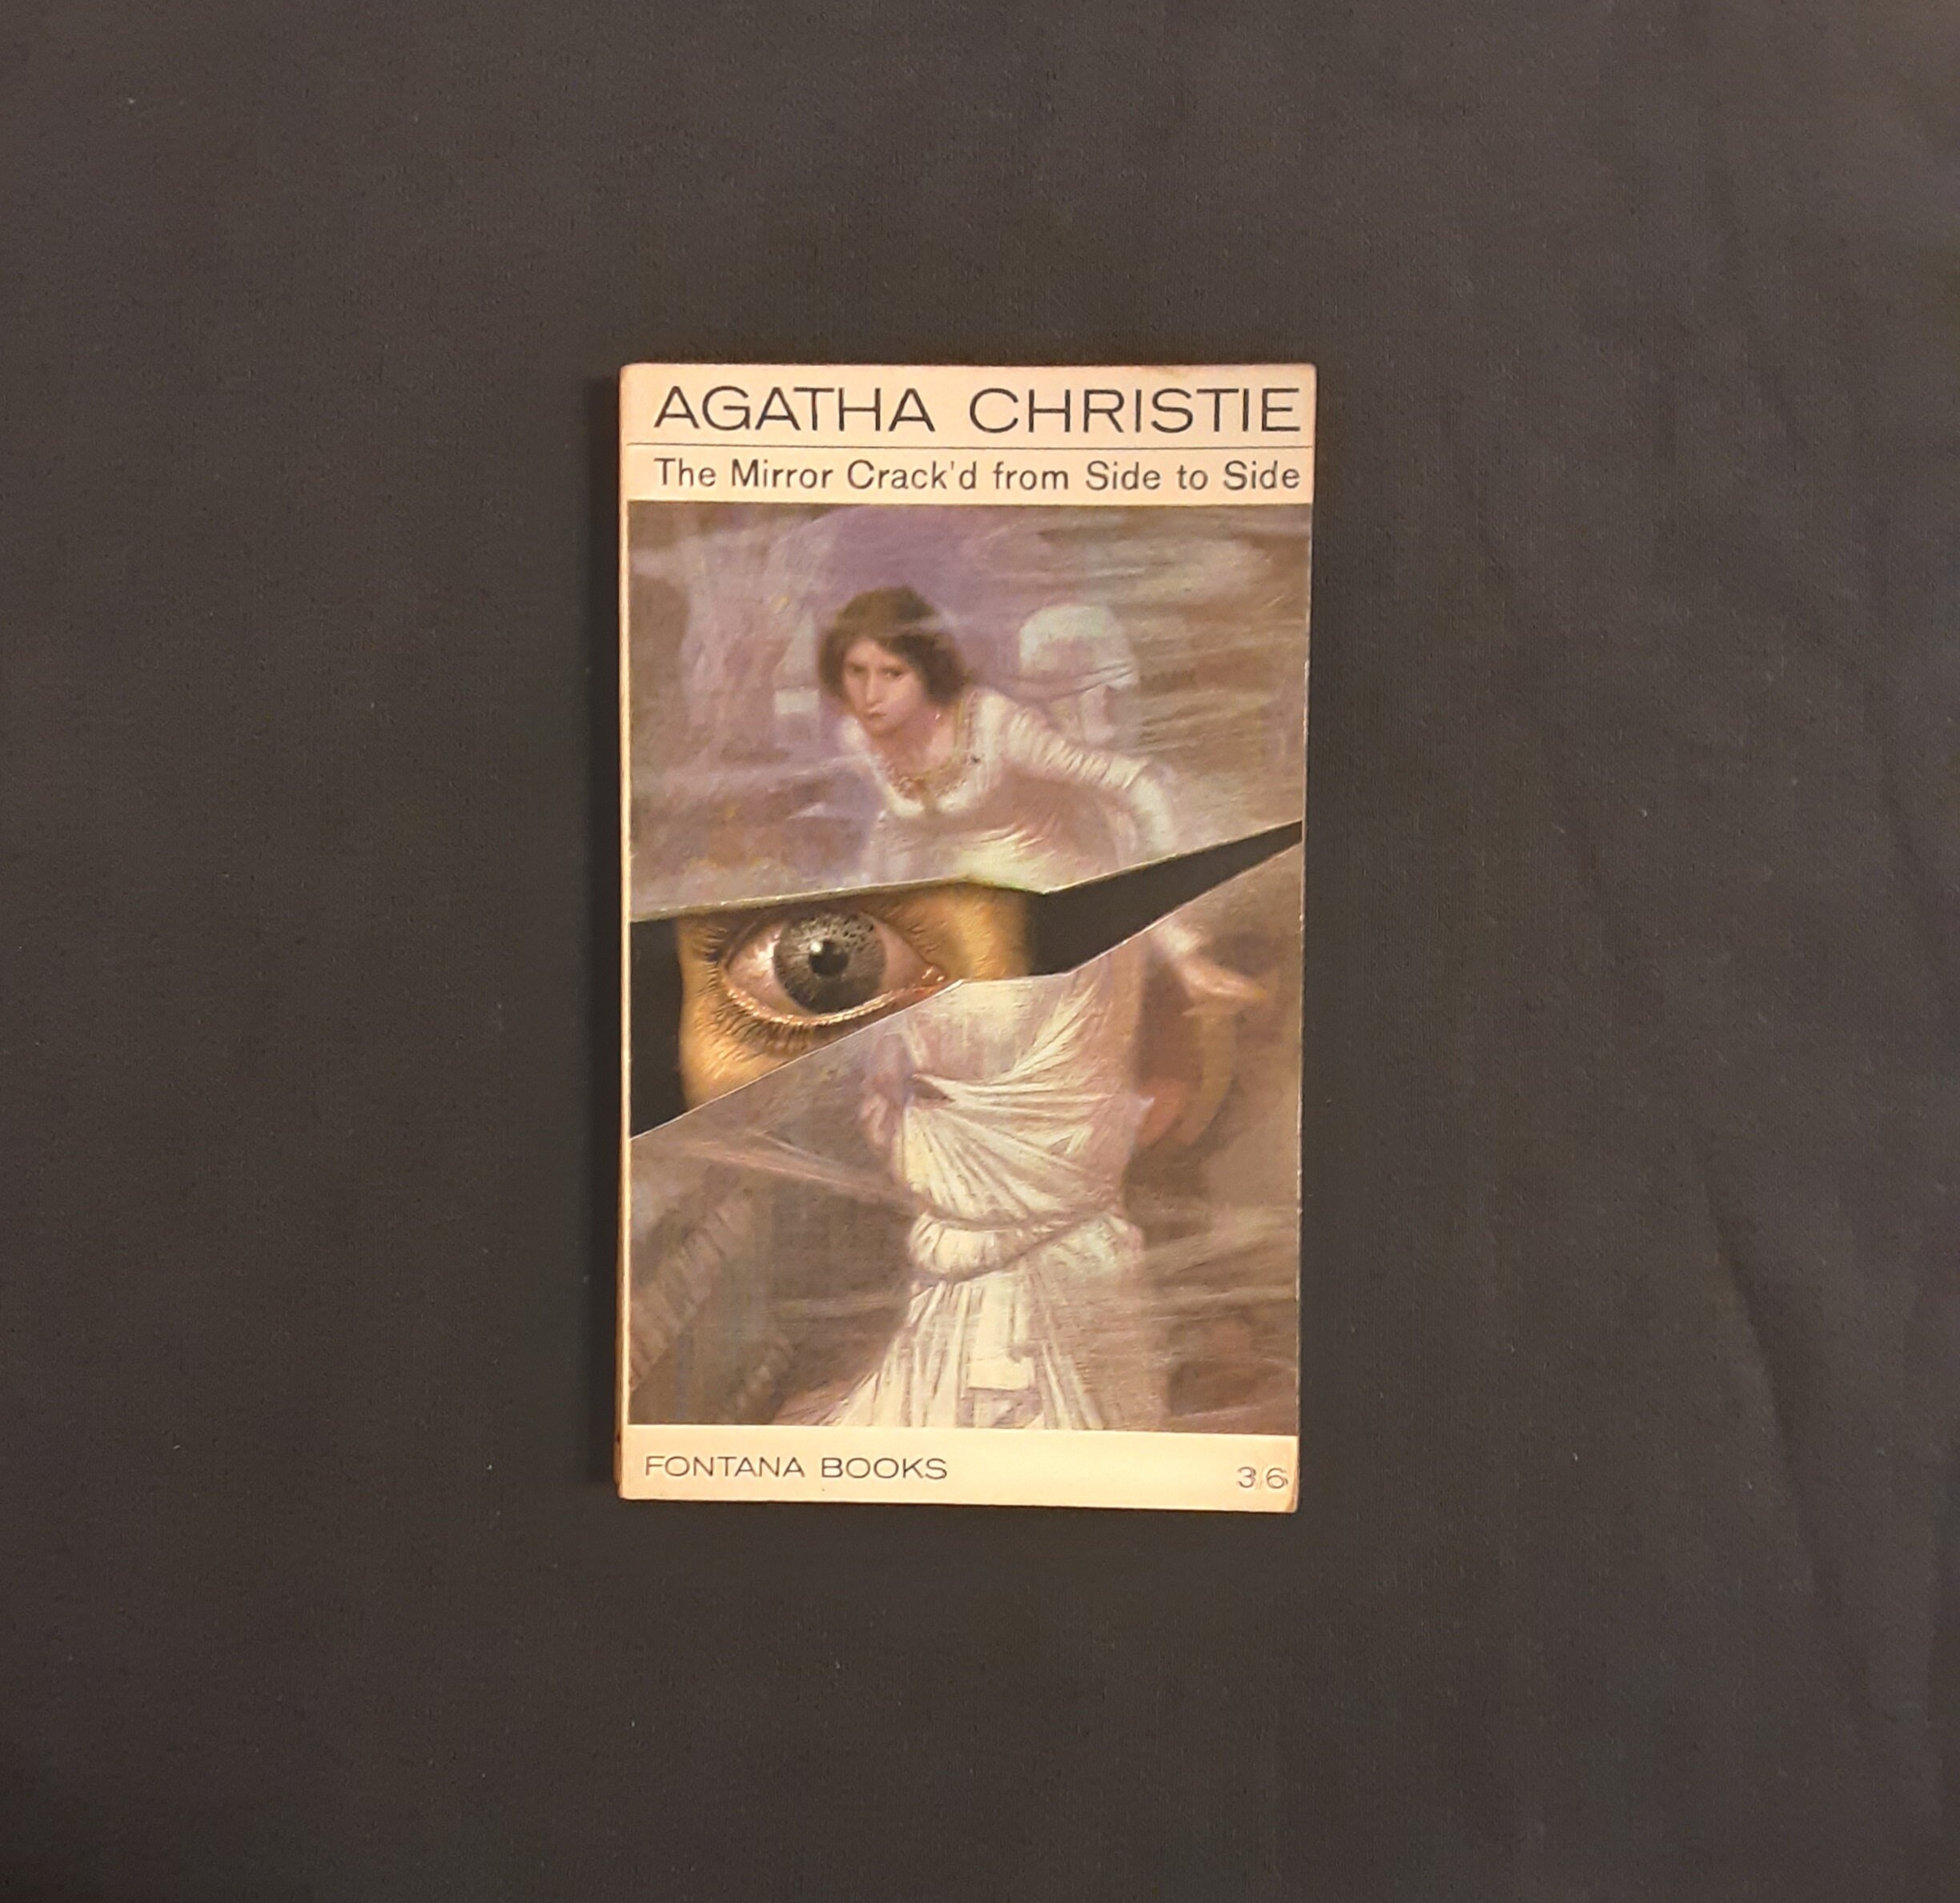 Agatha Christie's "The Mirror crack'd' da un lato all'altro" Nozze Accessori Borse e borsette 